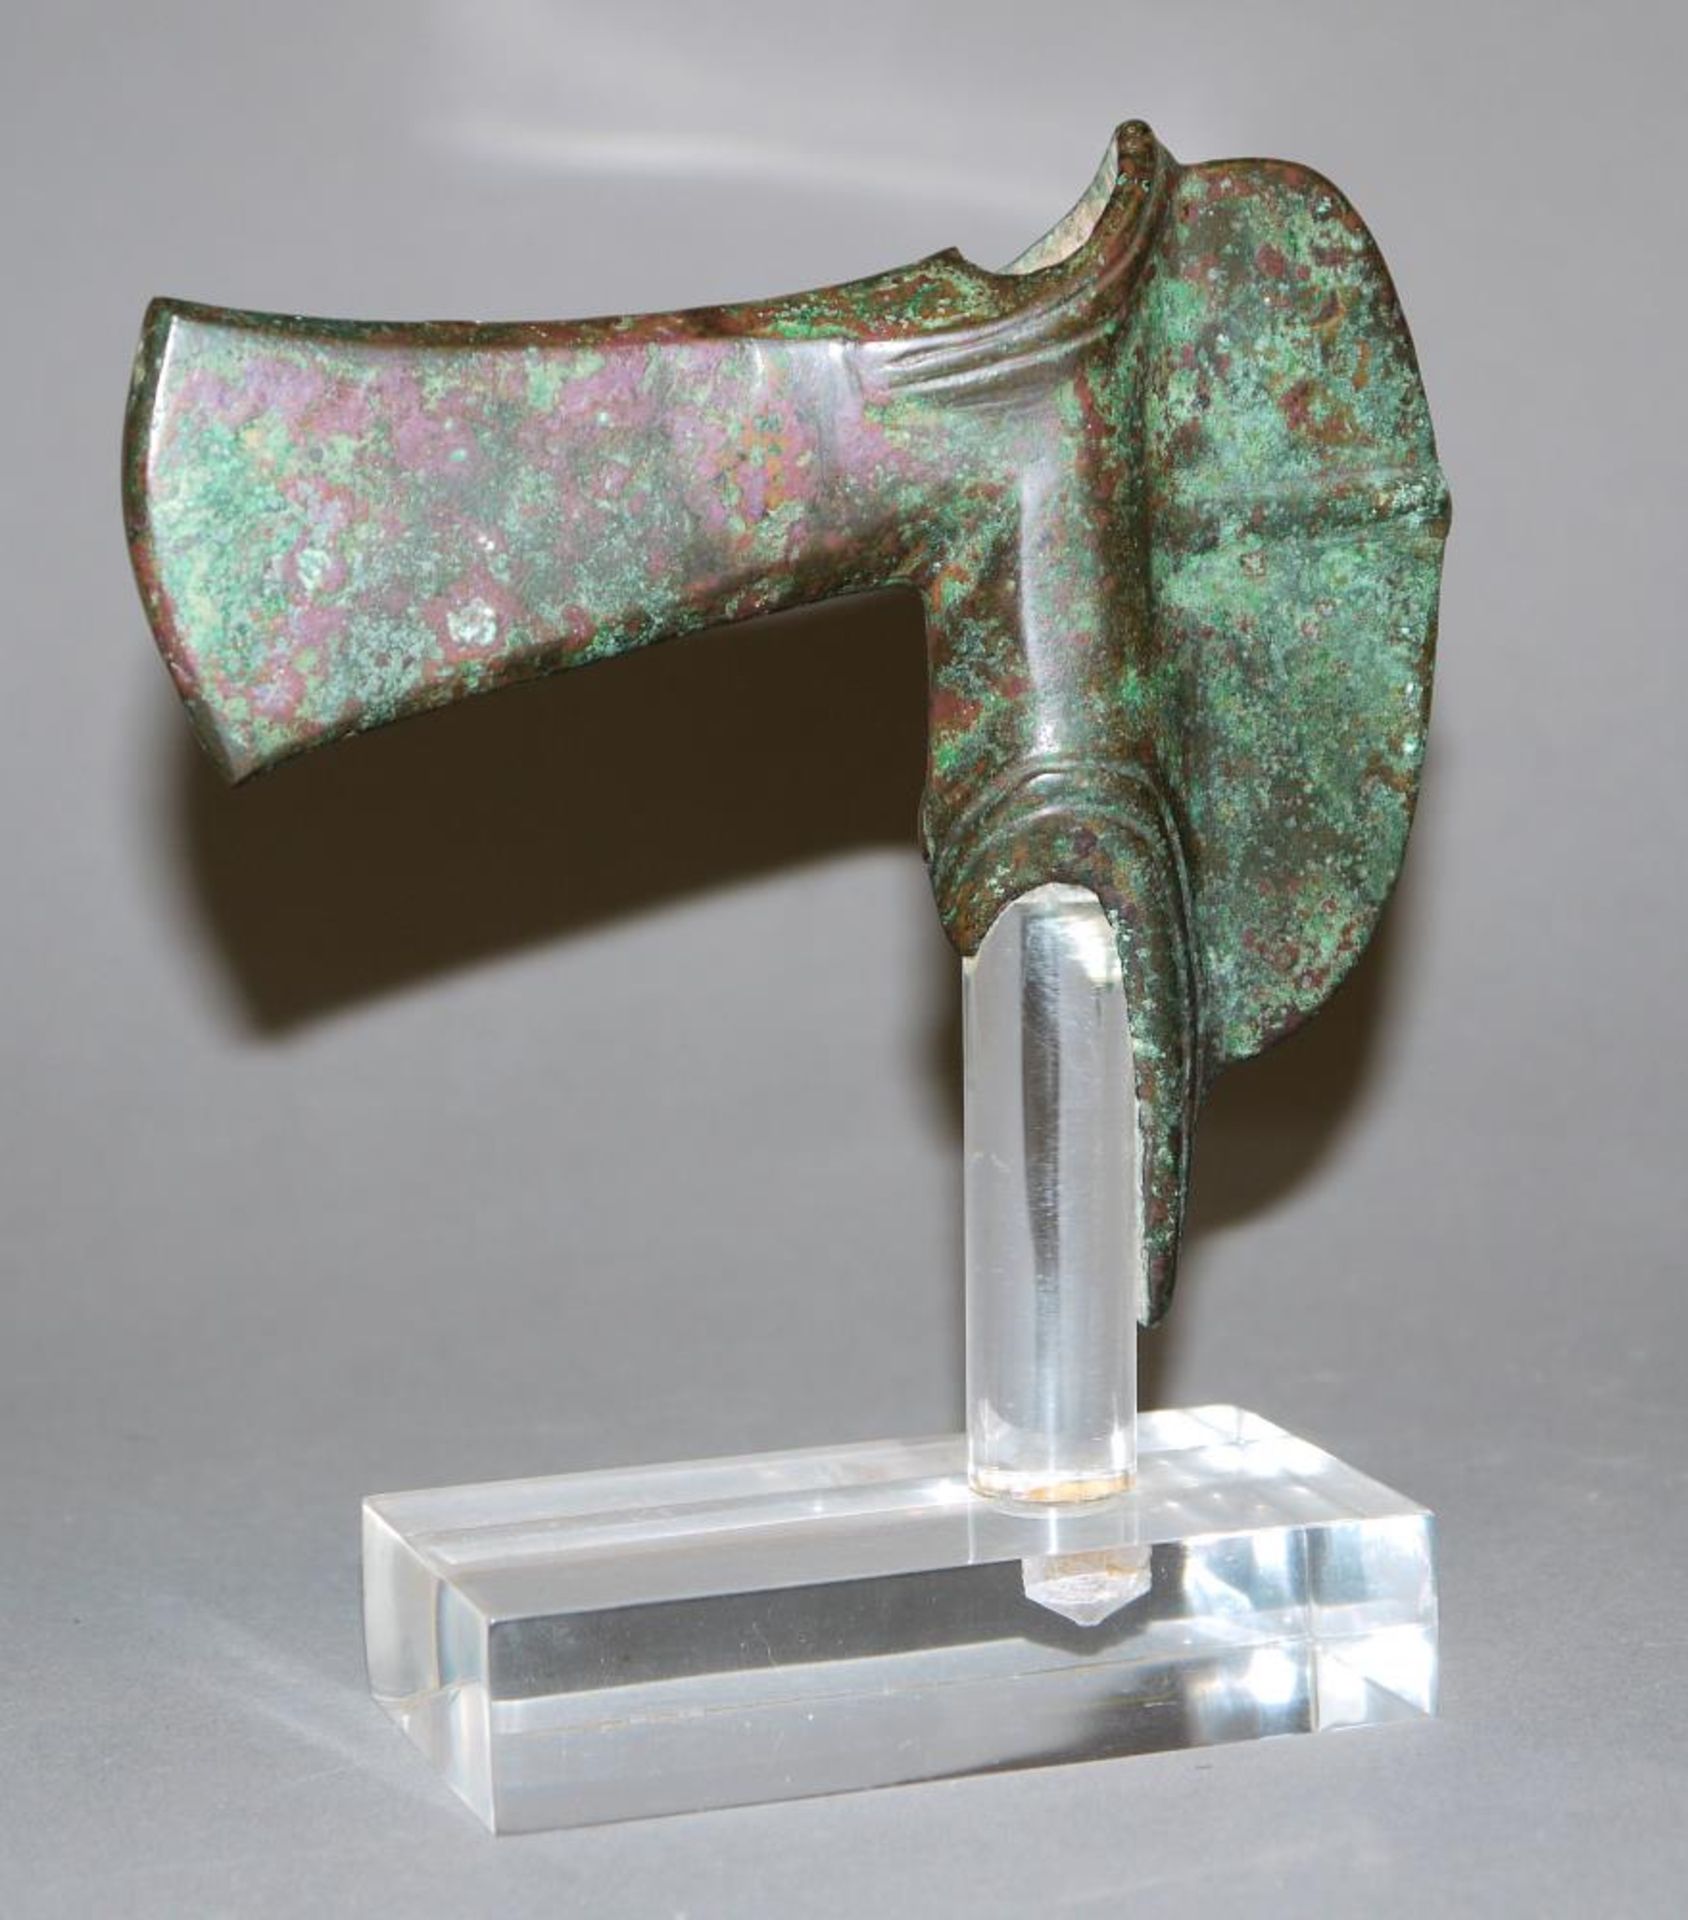 Axtklinge aus Bronze, Luristan, Persien, ca. 12. – 7. Jh. v. Chr. Bronzezeitliche Axt der Luristan-